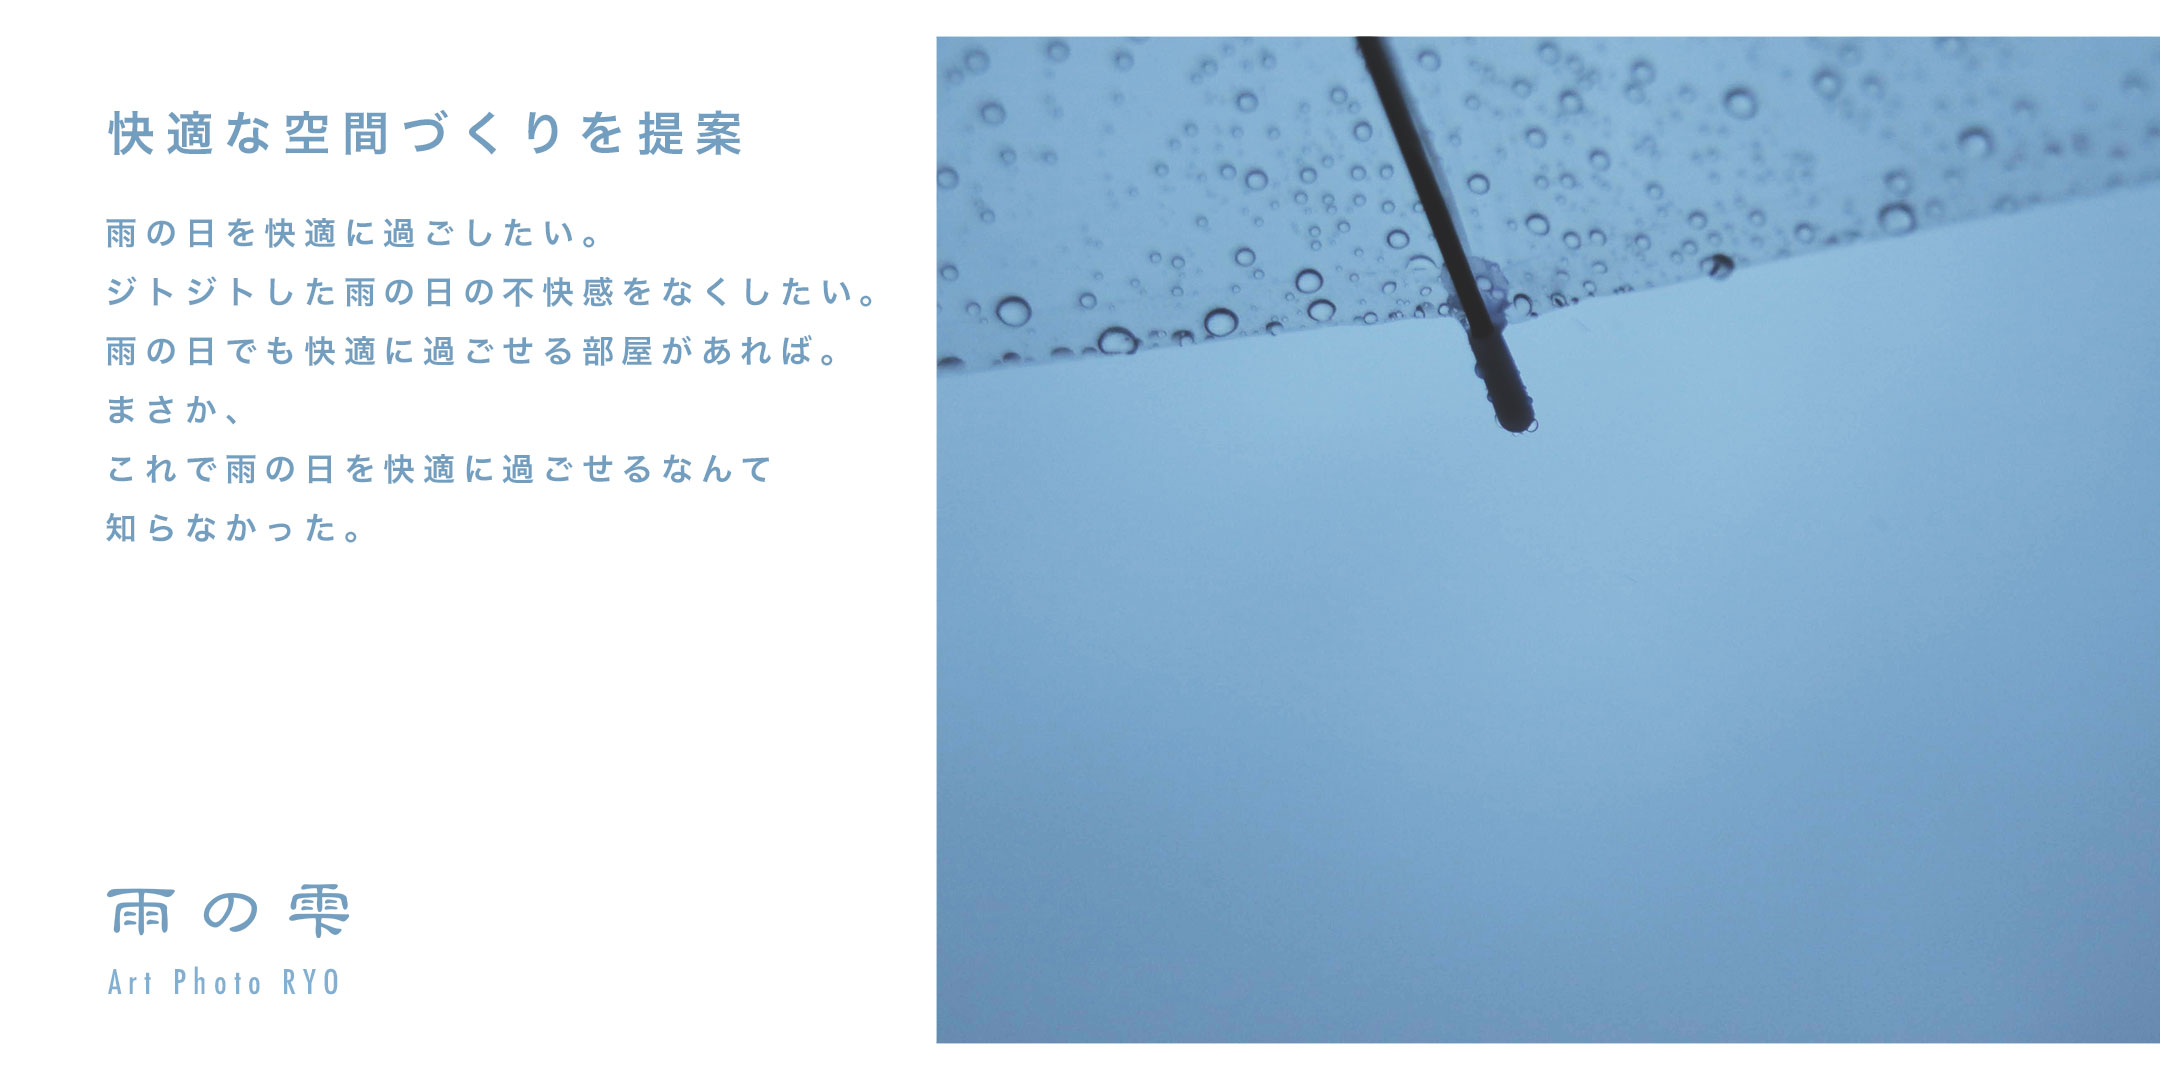 雨の雫 ブランド